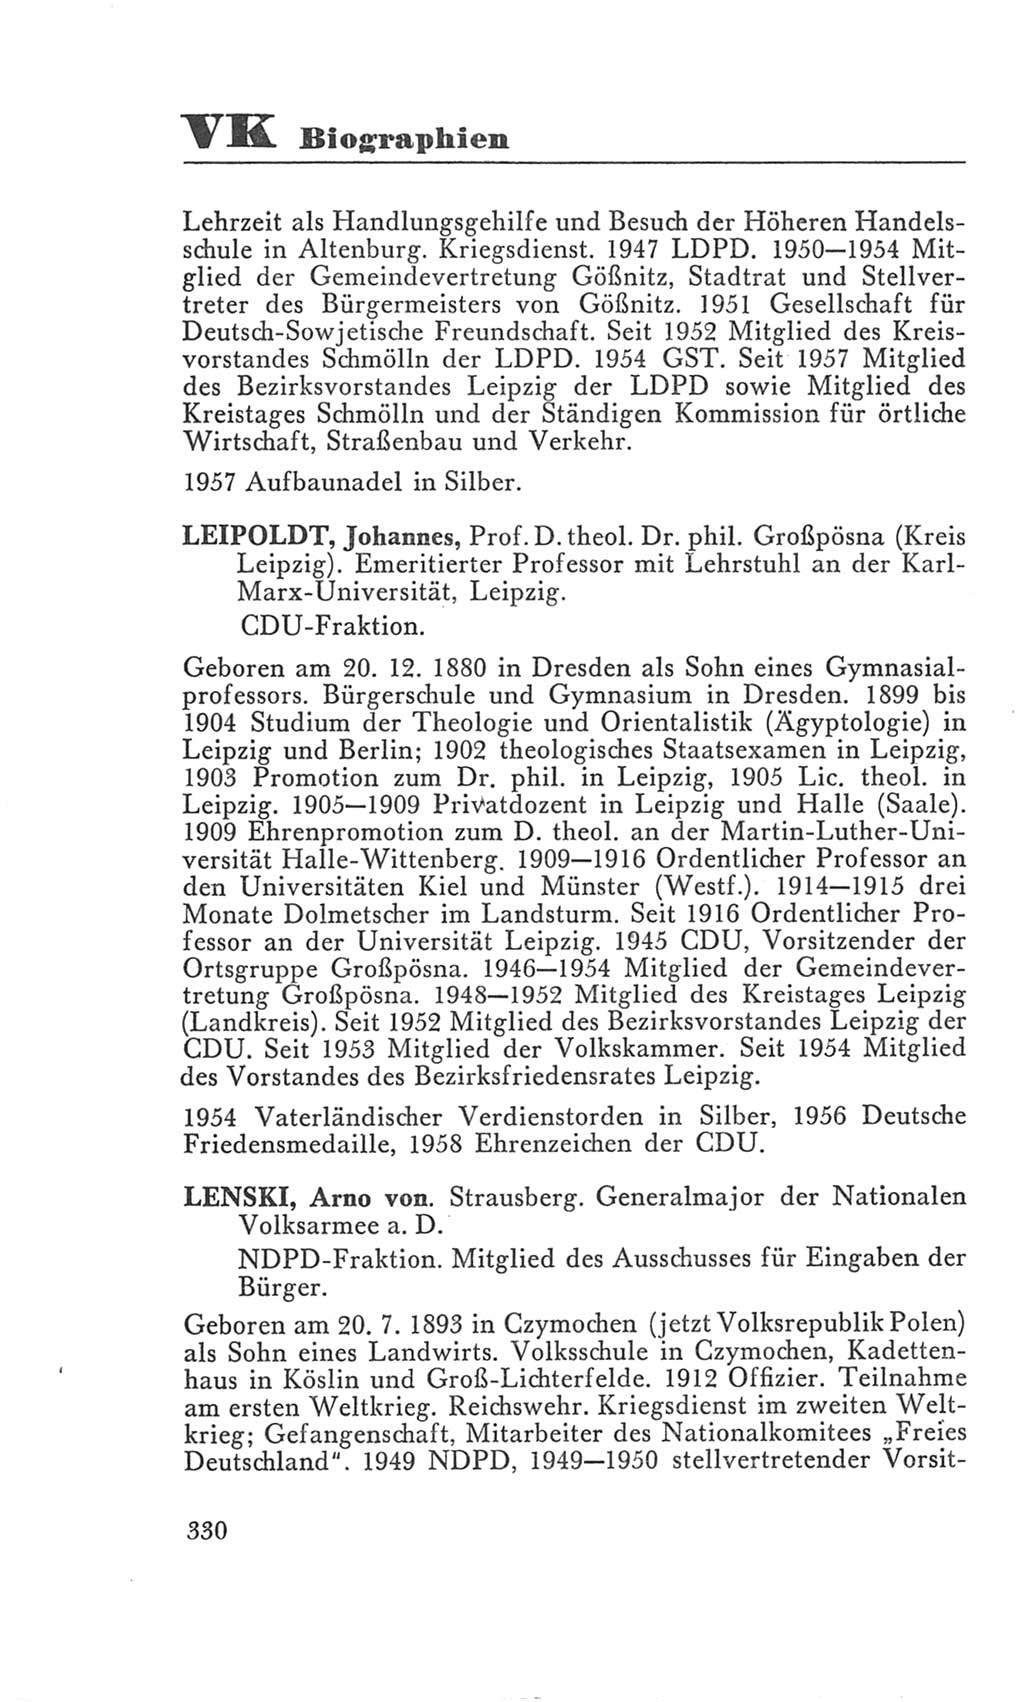 Handbuch der Volkskammer (VK) der Deutschen Demokratischen Republik (DDR), 3. Wahlperiode 1958-1963, Seite 330 (Hdb. VK. DDR 3. WP. 1958-1963, S. 330)